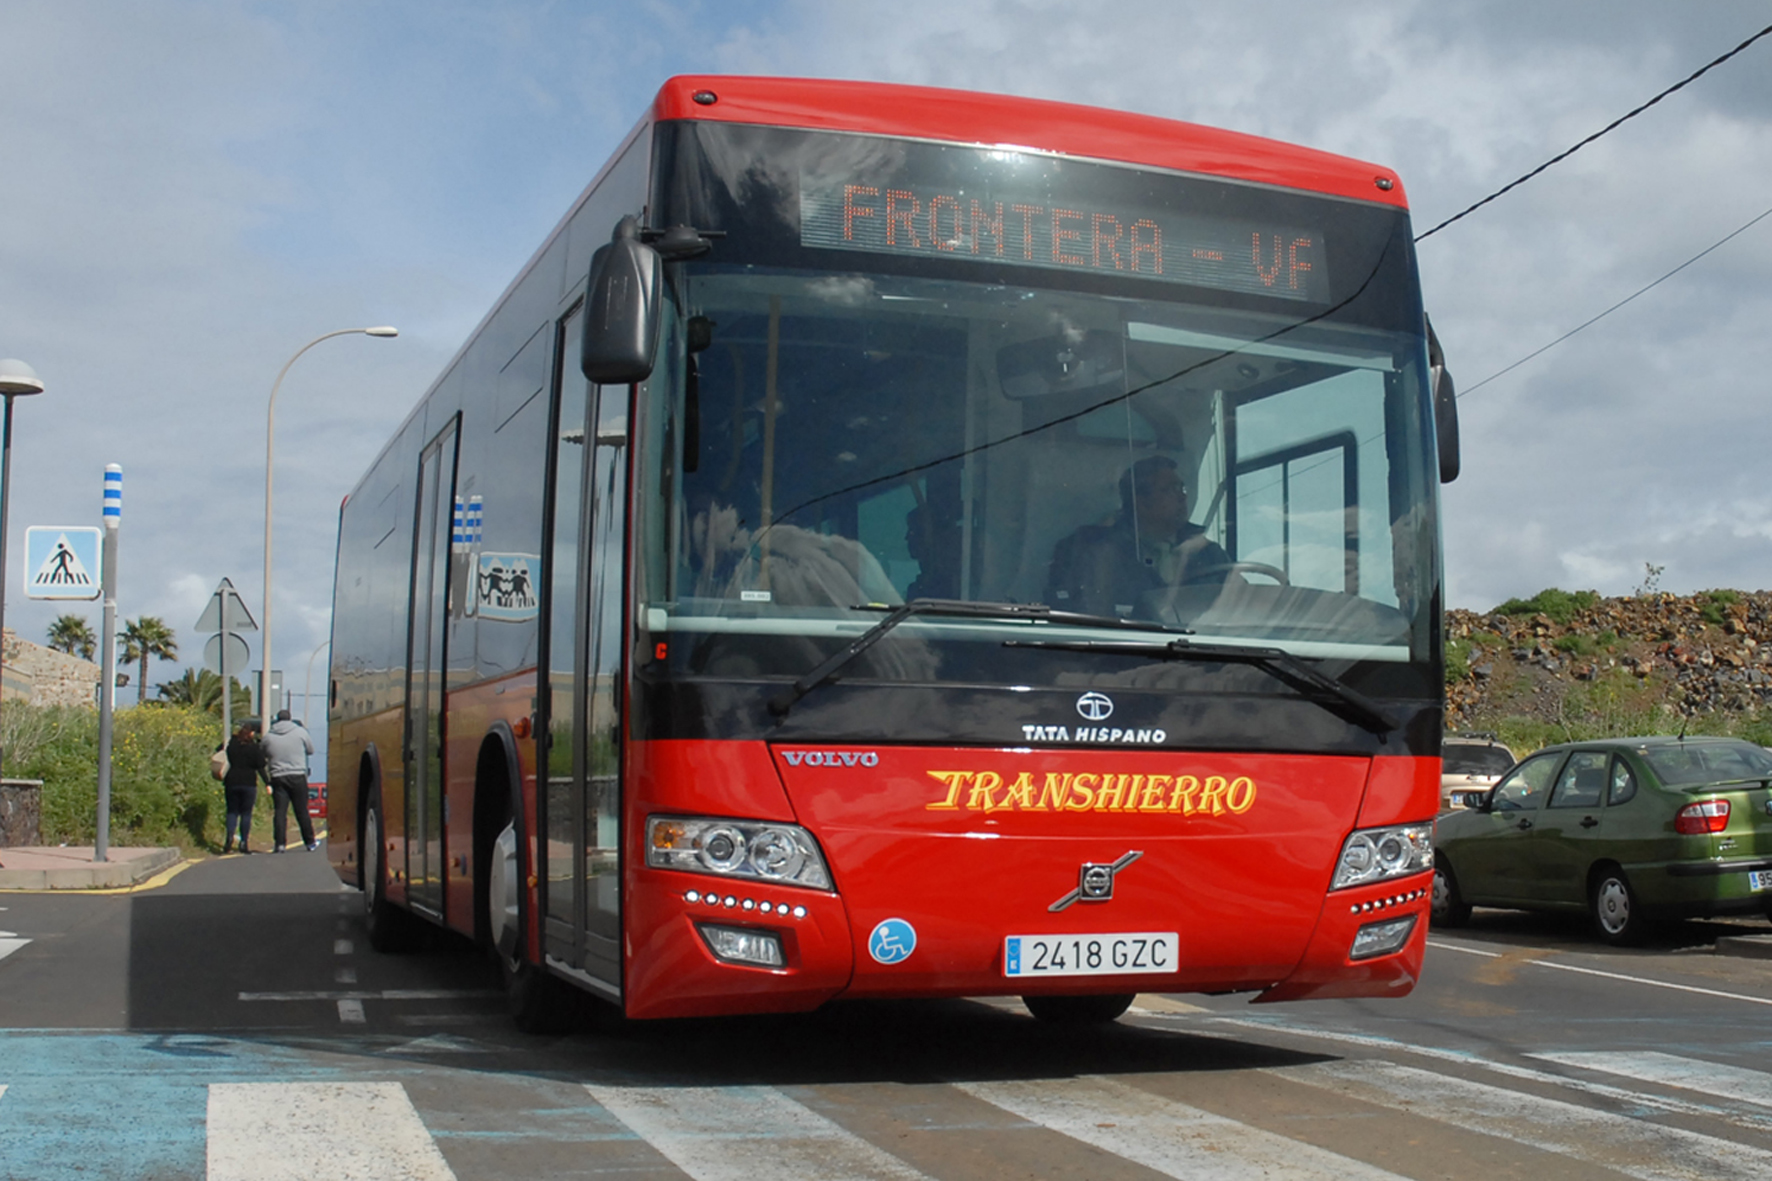 TransHierro modifica rutas y horarios del servicio regular de guaguas a partir del próximo 1 de septiembre